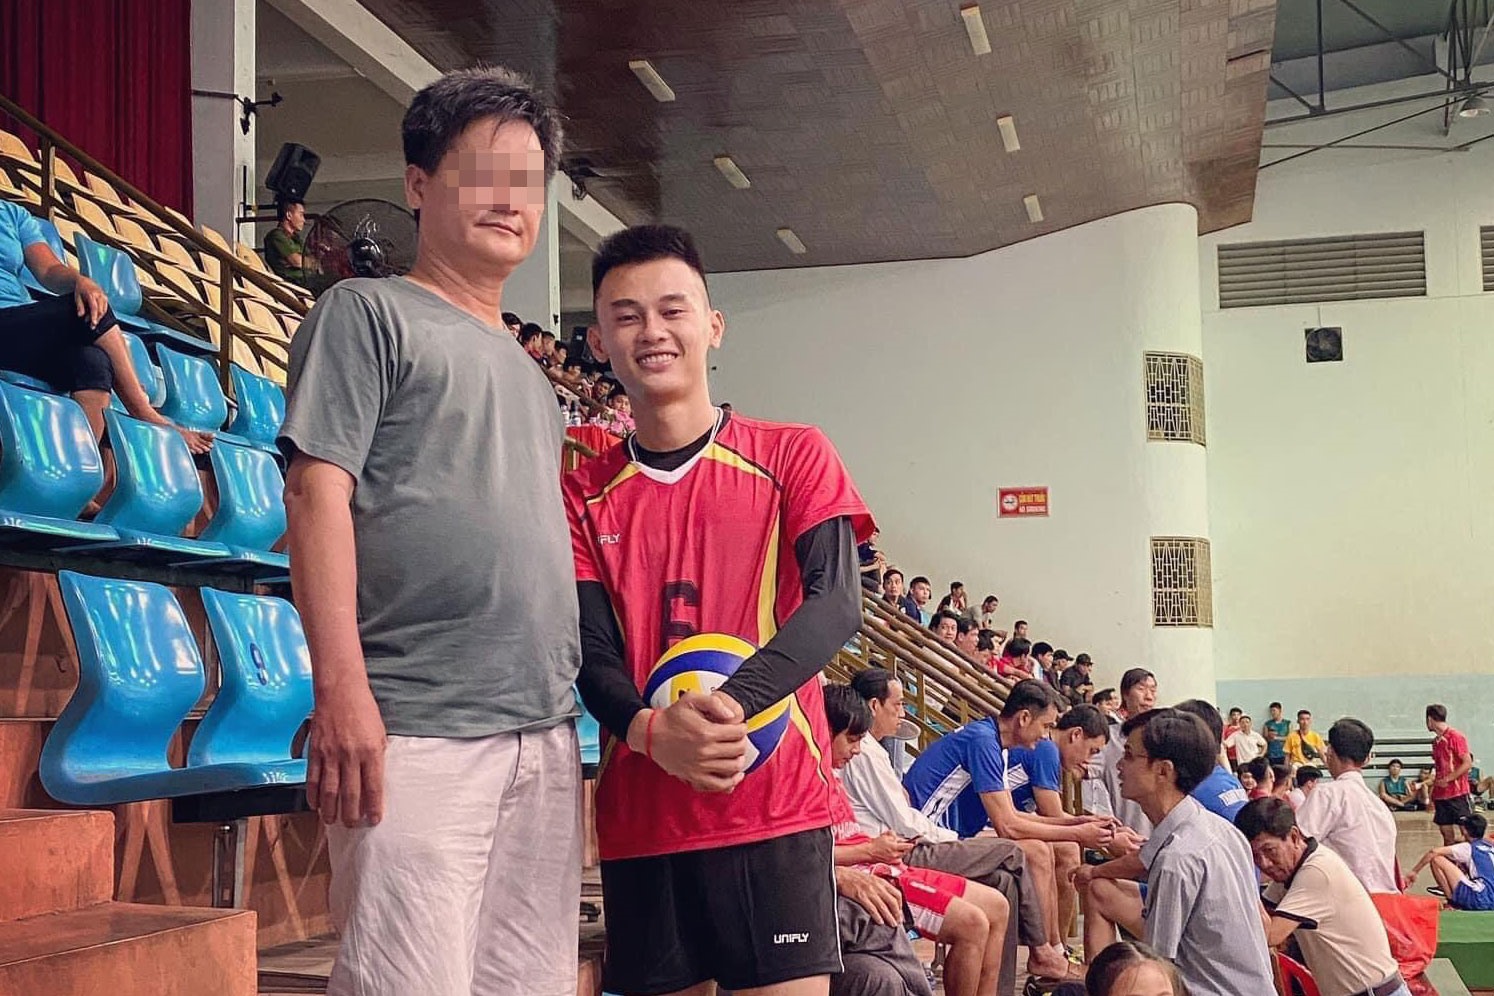 Phan Công Khanh (phải) cần giã kể từ sự nghiệp bóng chuyền có tính chuyên nghiệp khi bám gặp chấn thương chạc chằng ngón tay. Ảnh: Facebook nhân vật